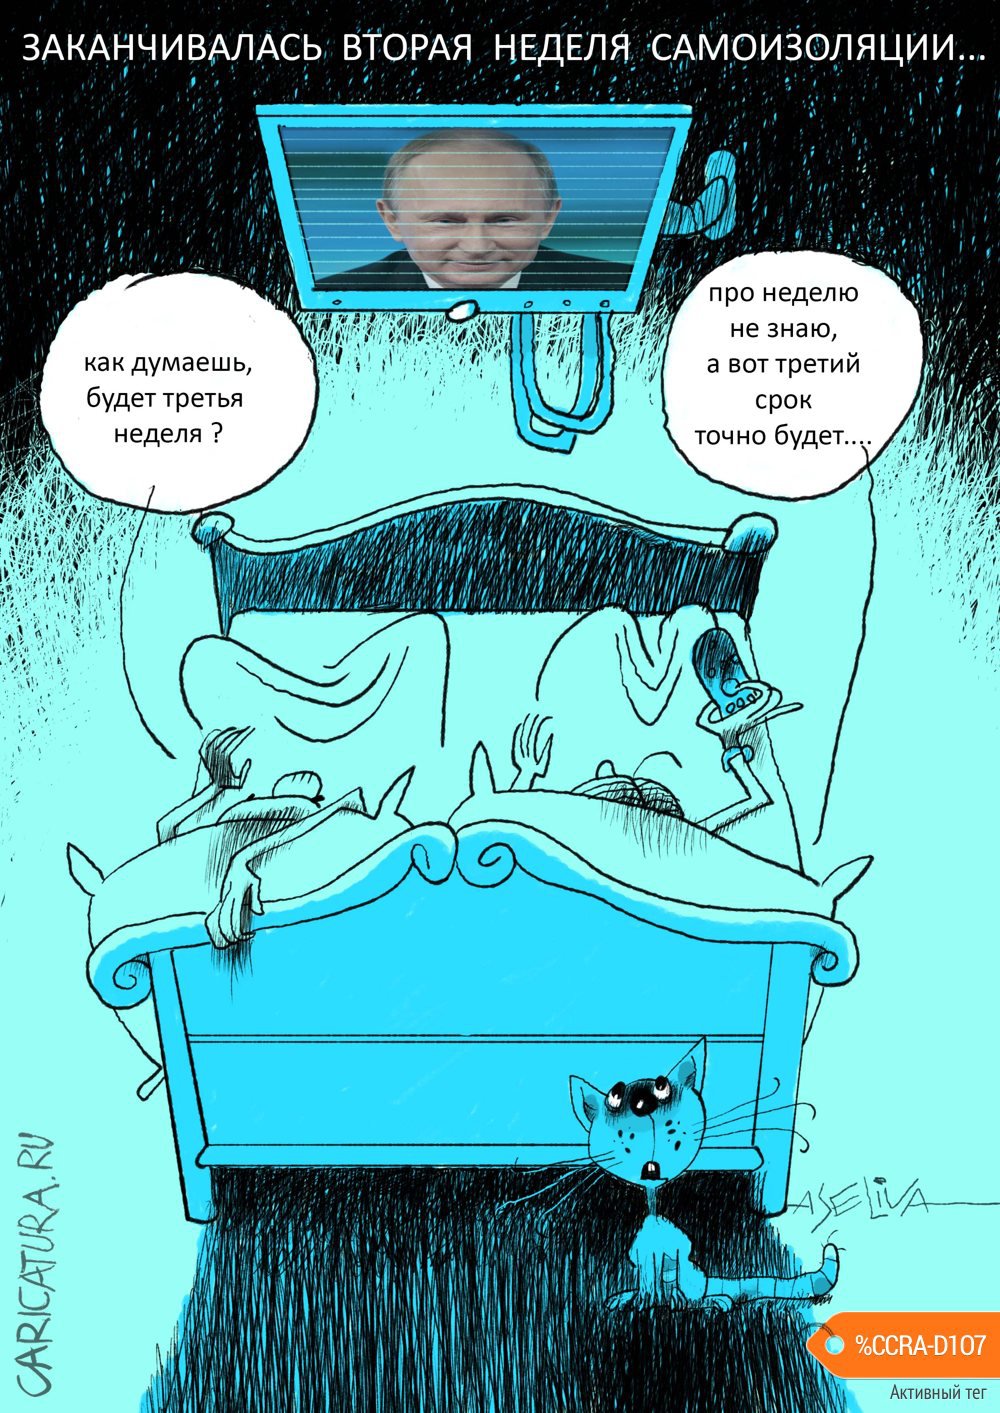 Карикатура "Вторая неделя самоизоляции в России", Андрей Селиванов